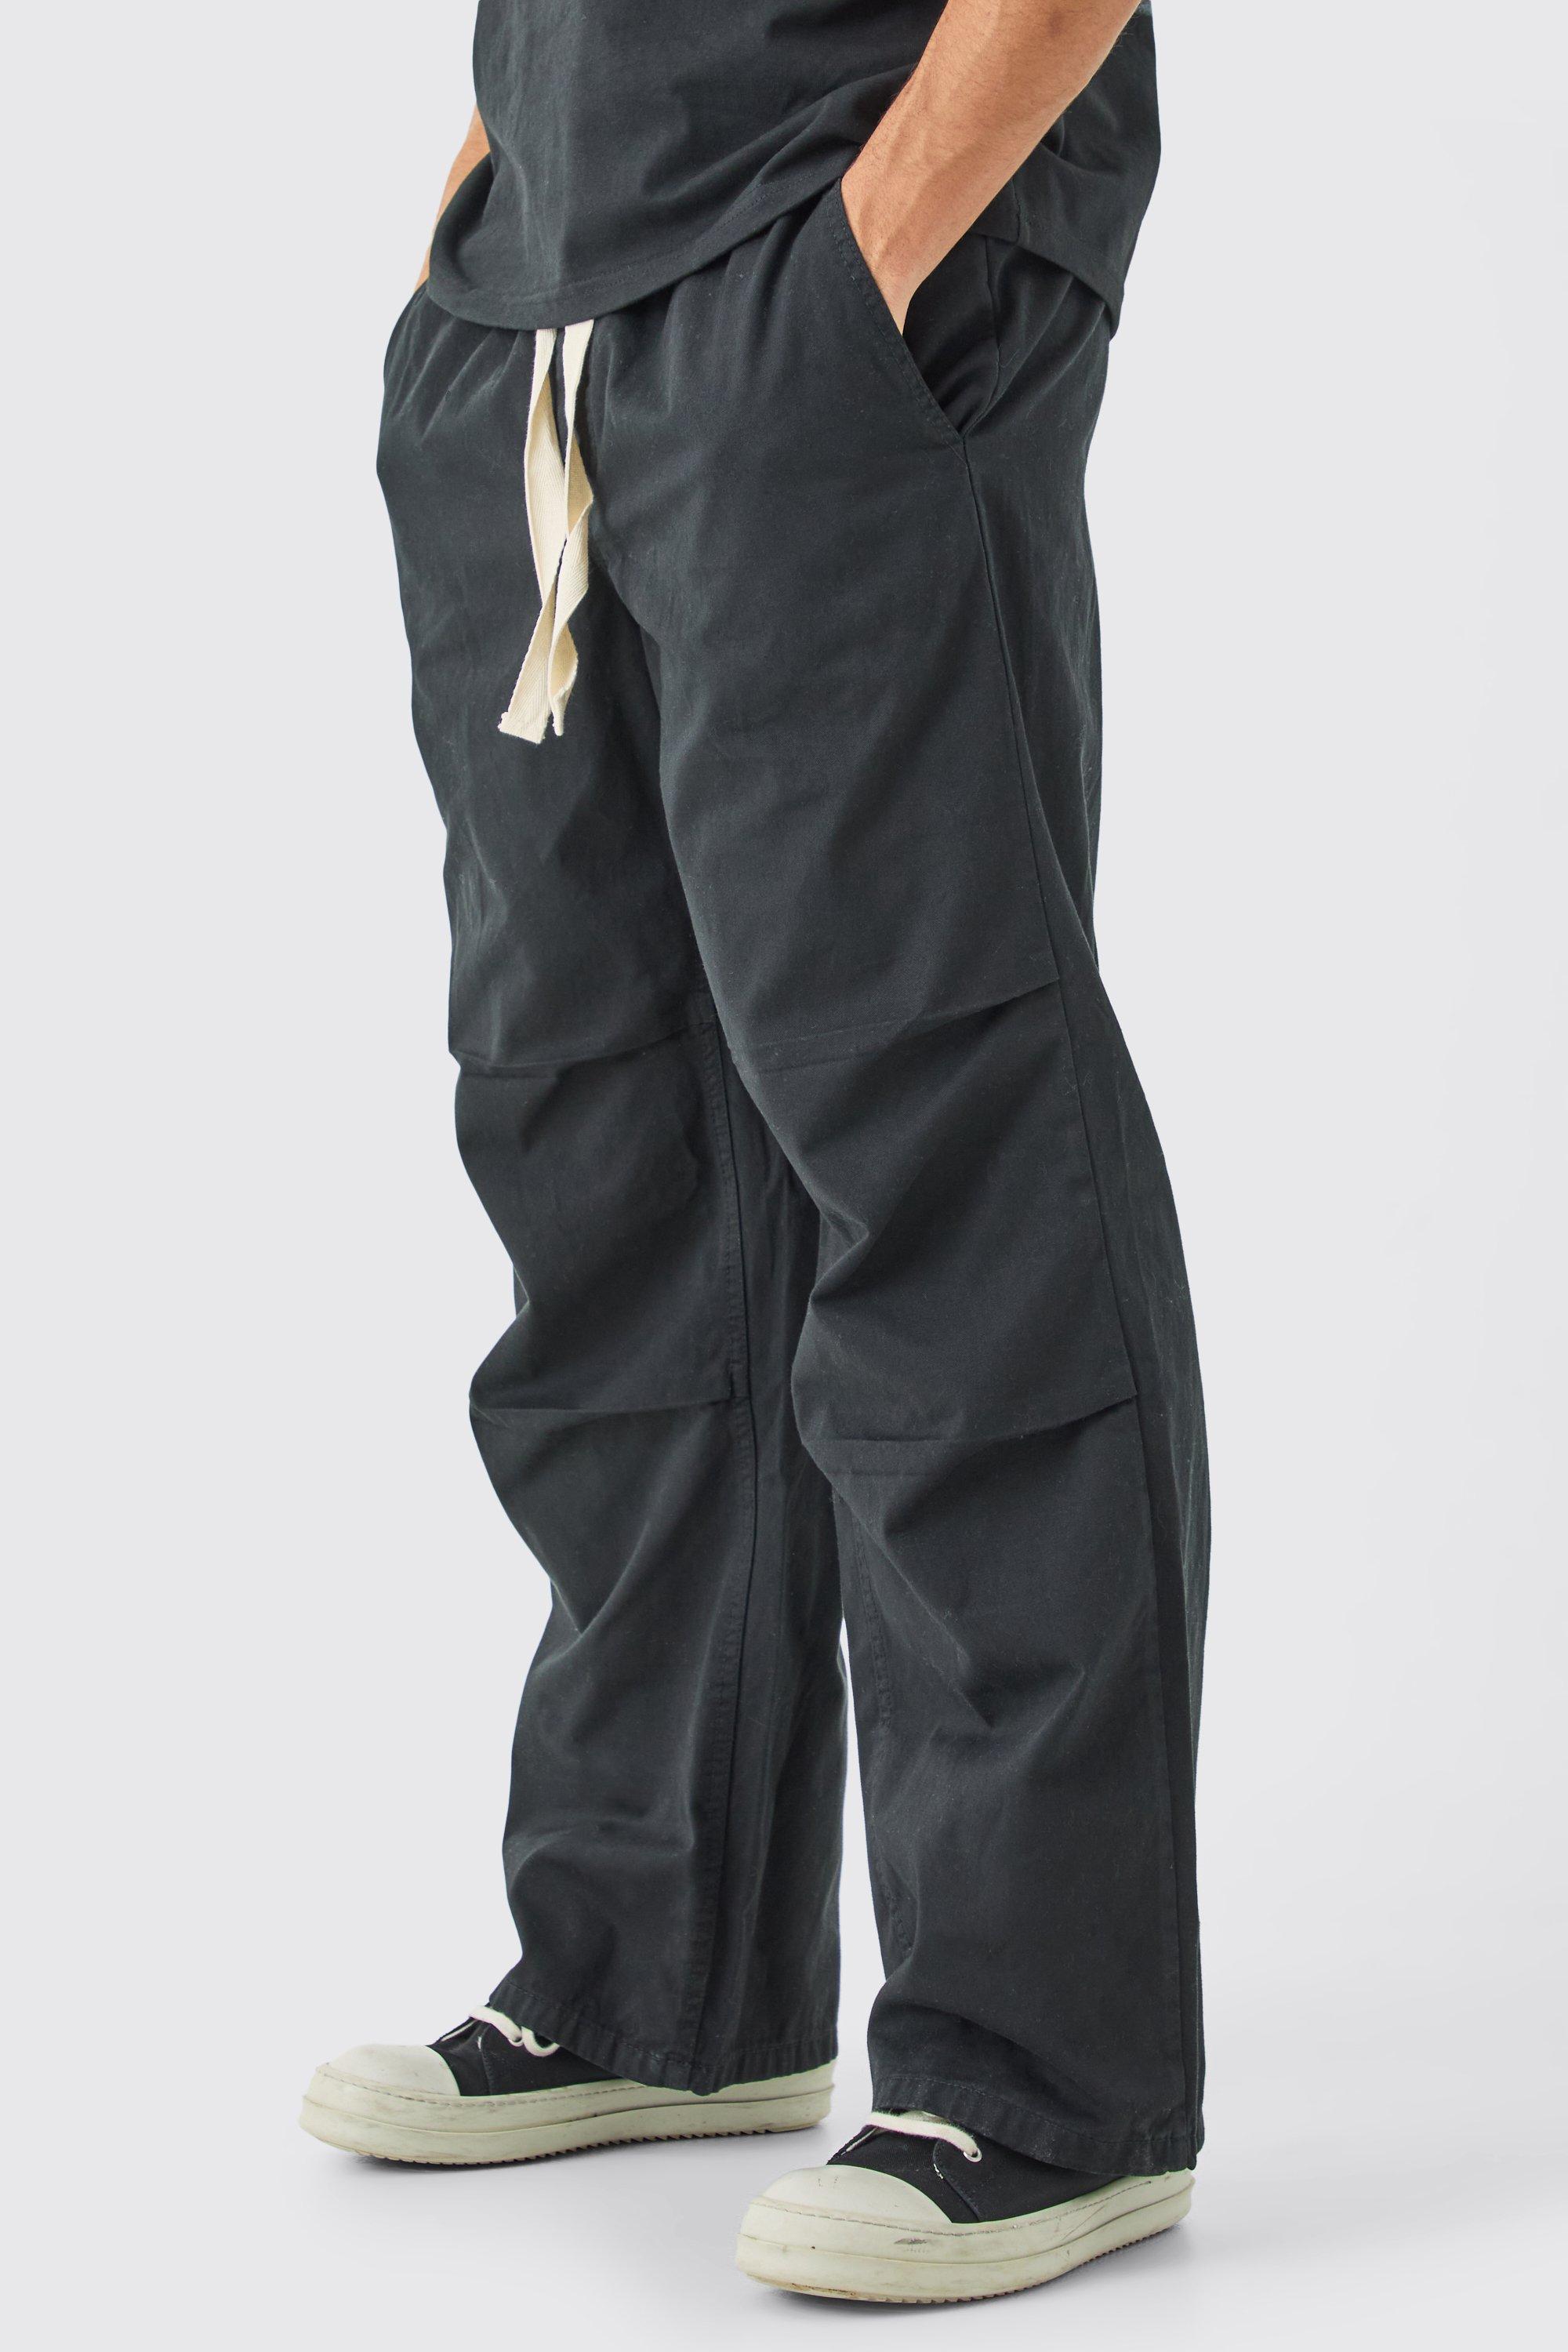 Image of Pantaloni extra comodi con vita elasticizzata e laccetti a contrasto, Grigio